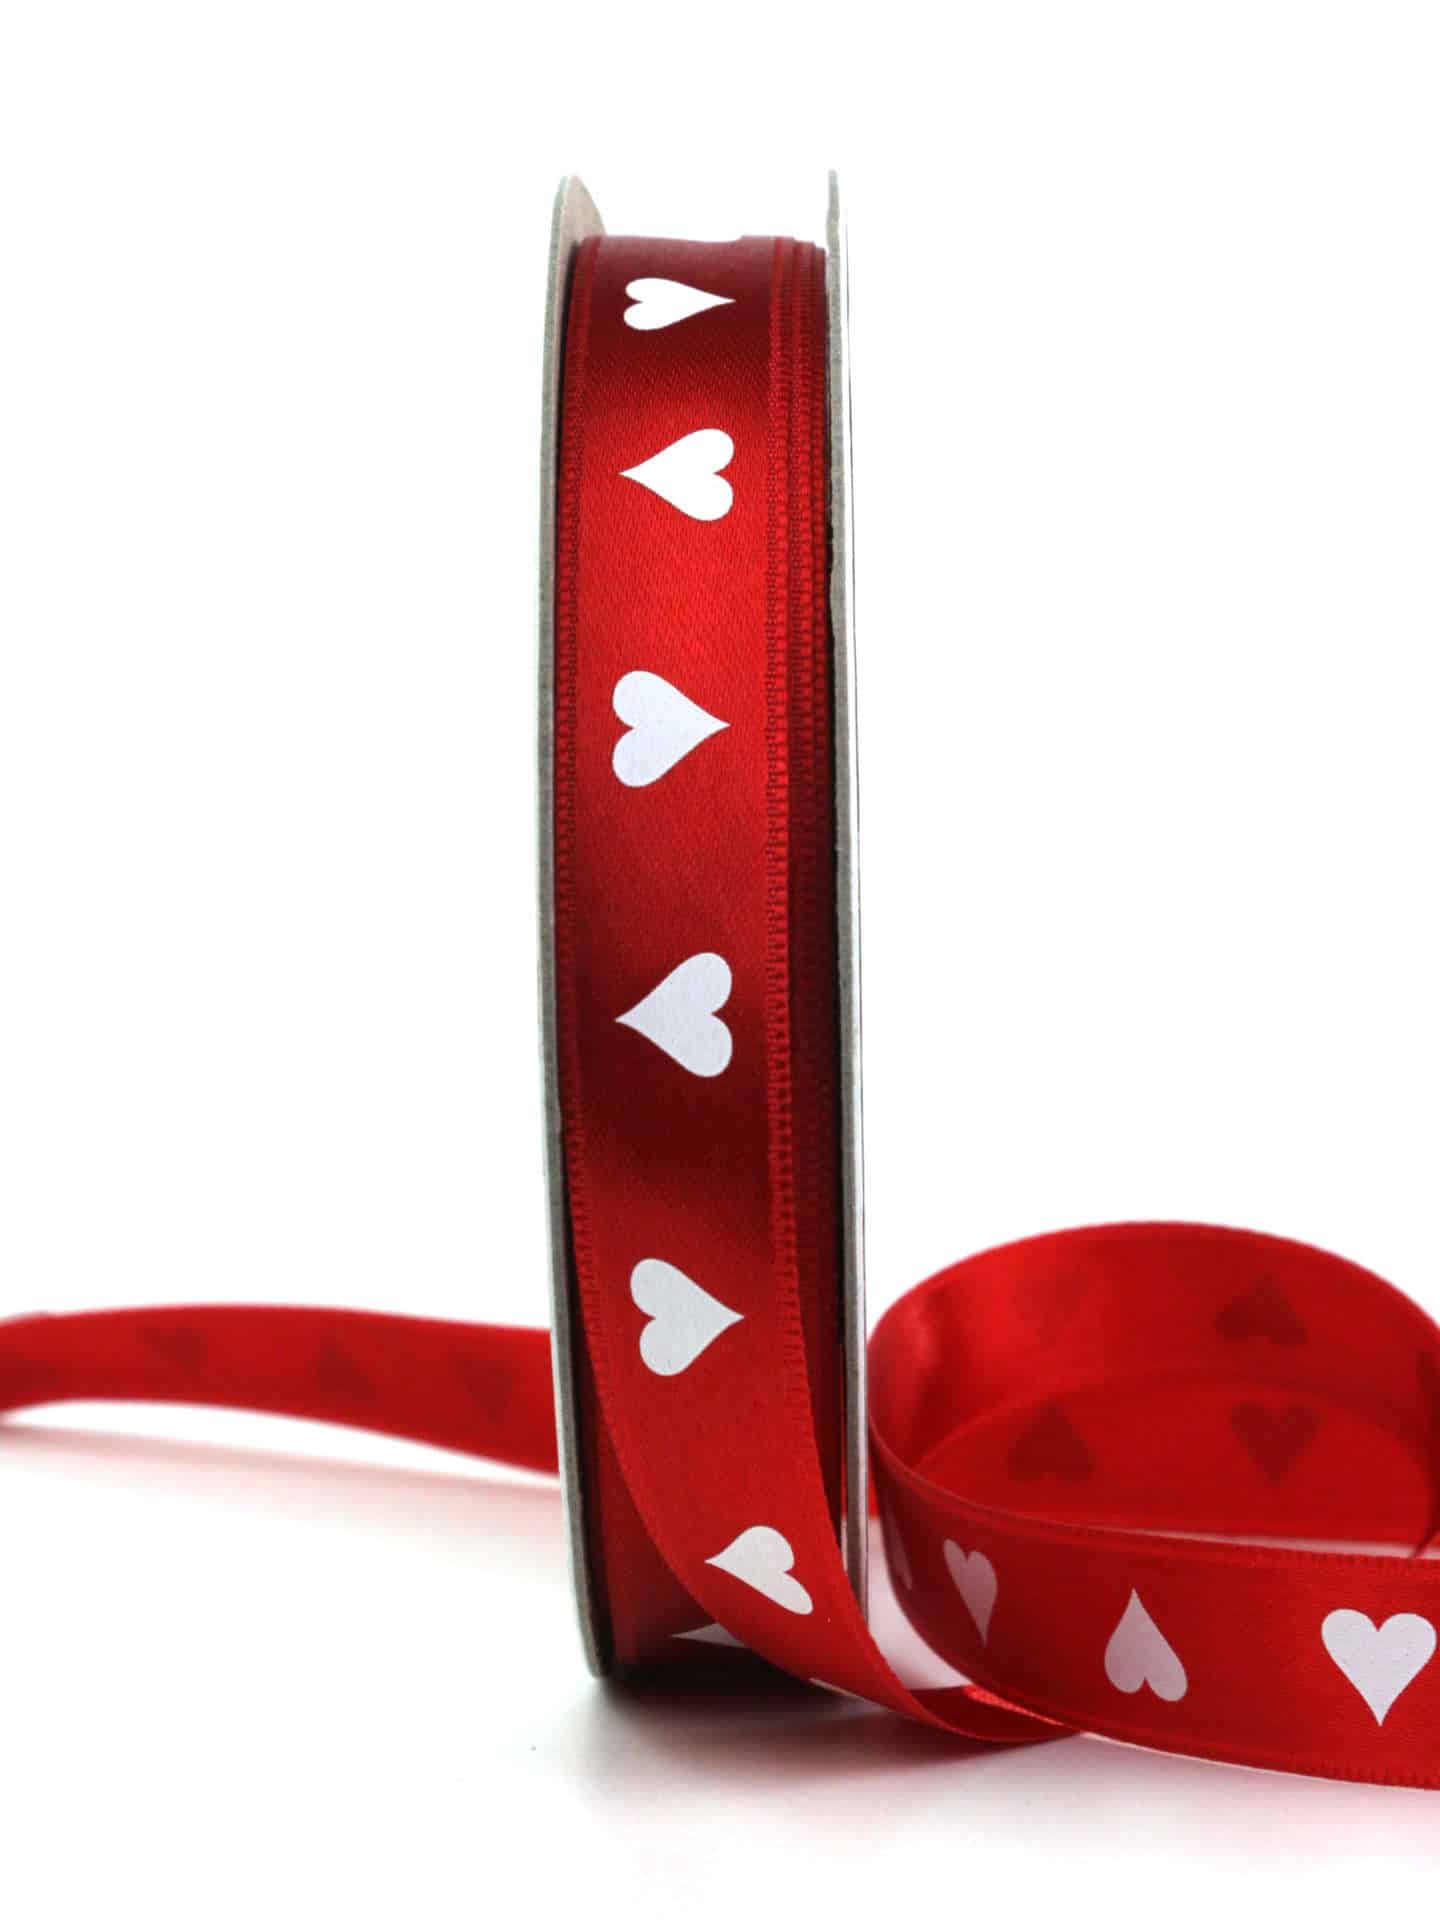 Geschenkband mit Herzen, rot, 15 mm breit - geschenkband-fuer-anlaesse, muttertag, anlasse, valentinstag, geschenkband, geschenkband-gemustert, geschenkband-mit-herzen